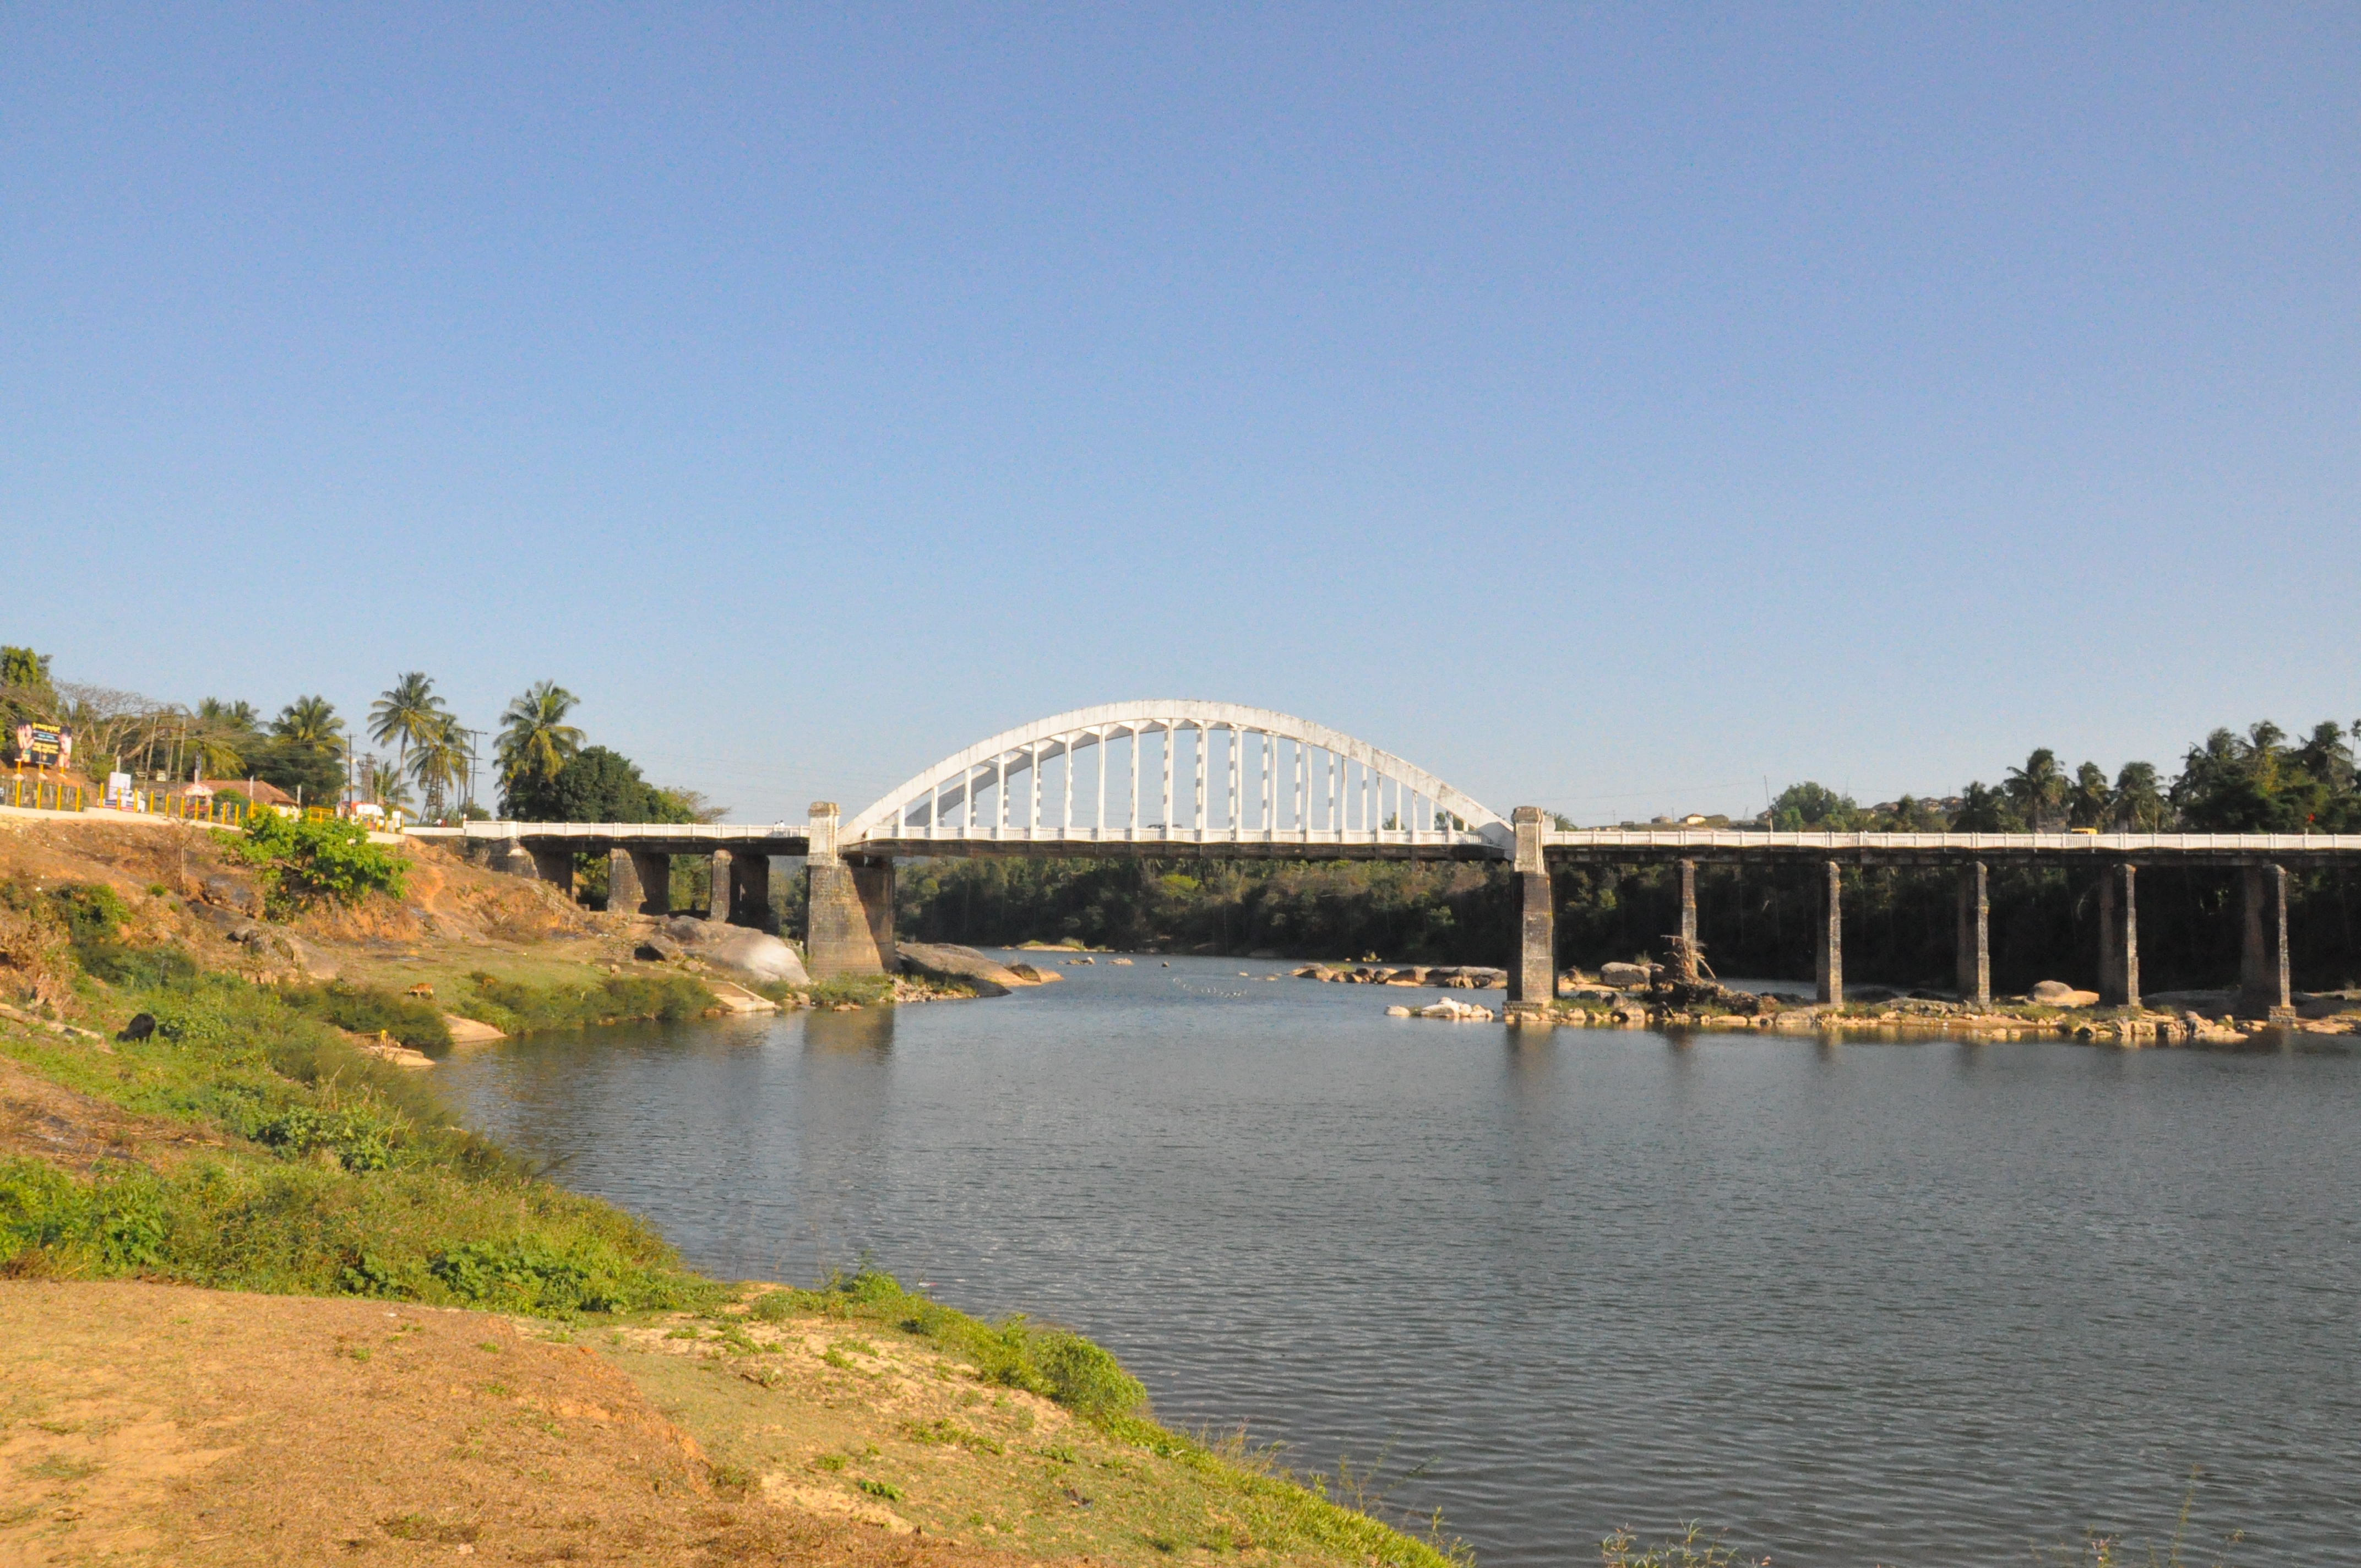 Tunga Bridge